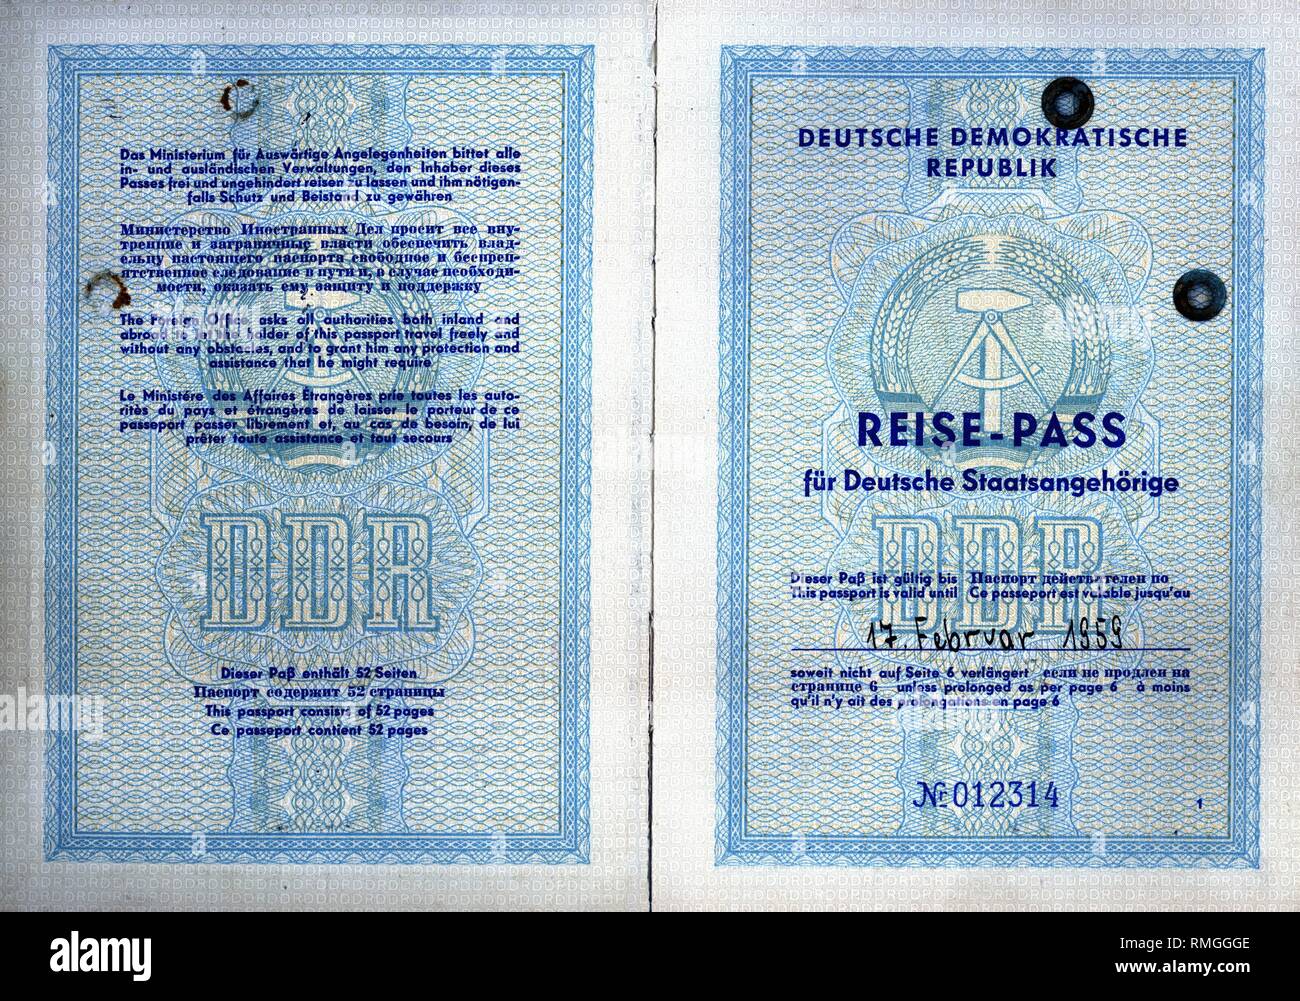 Le pagine interne del tedesco orientale di passaporto per i cittadini tedeschi a partire dal 1957. Data di rilascio Febbraio 17, 1957 a Berlino Est. Foto Stock